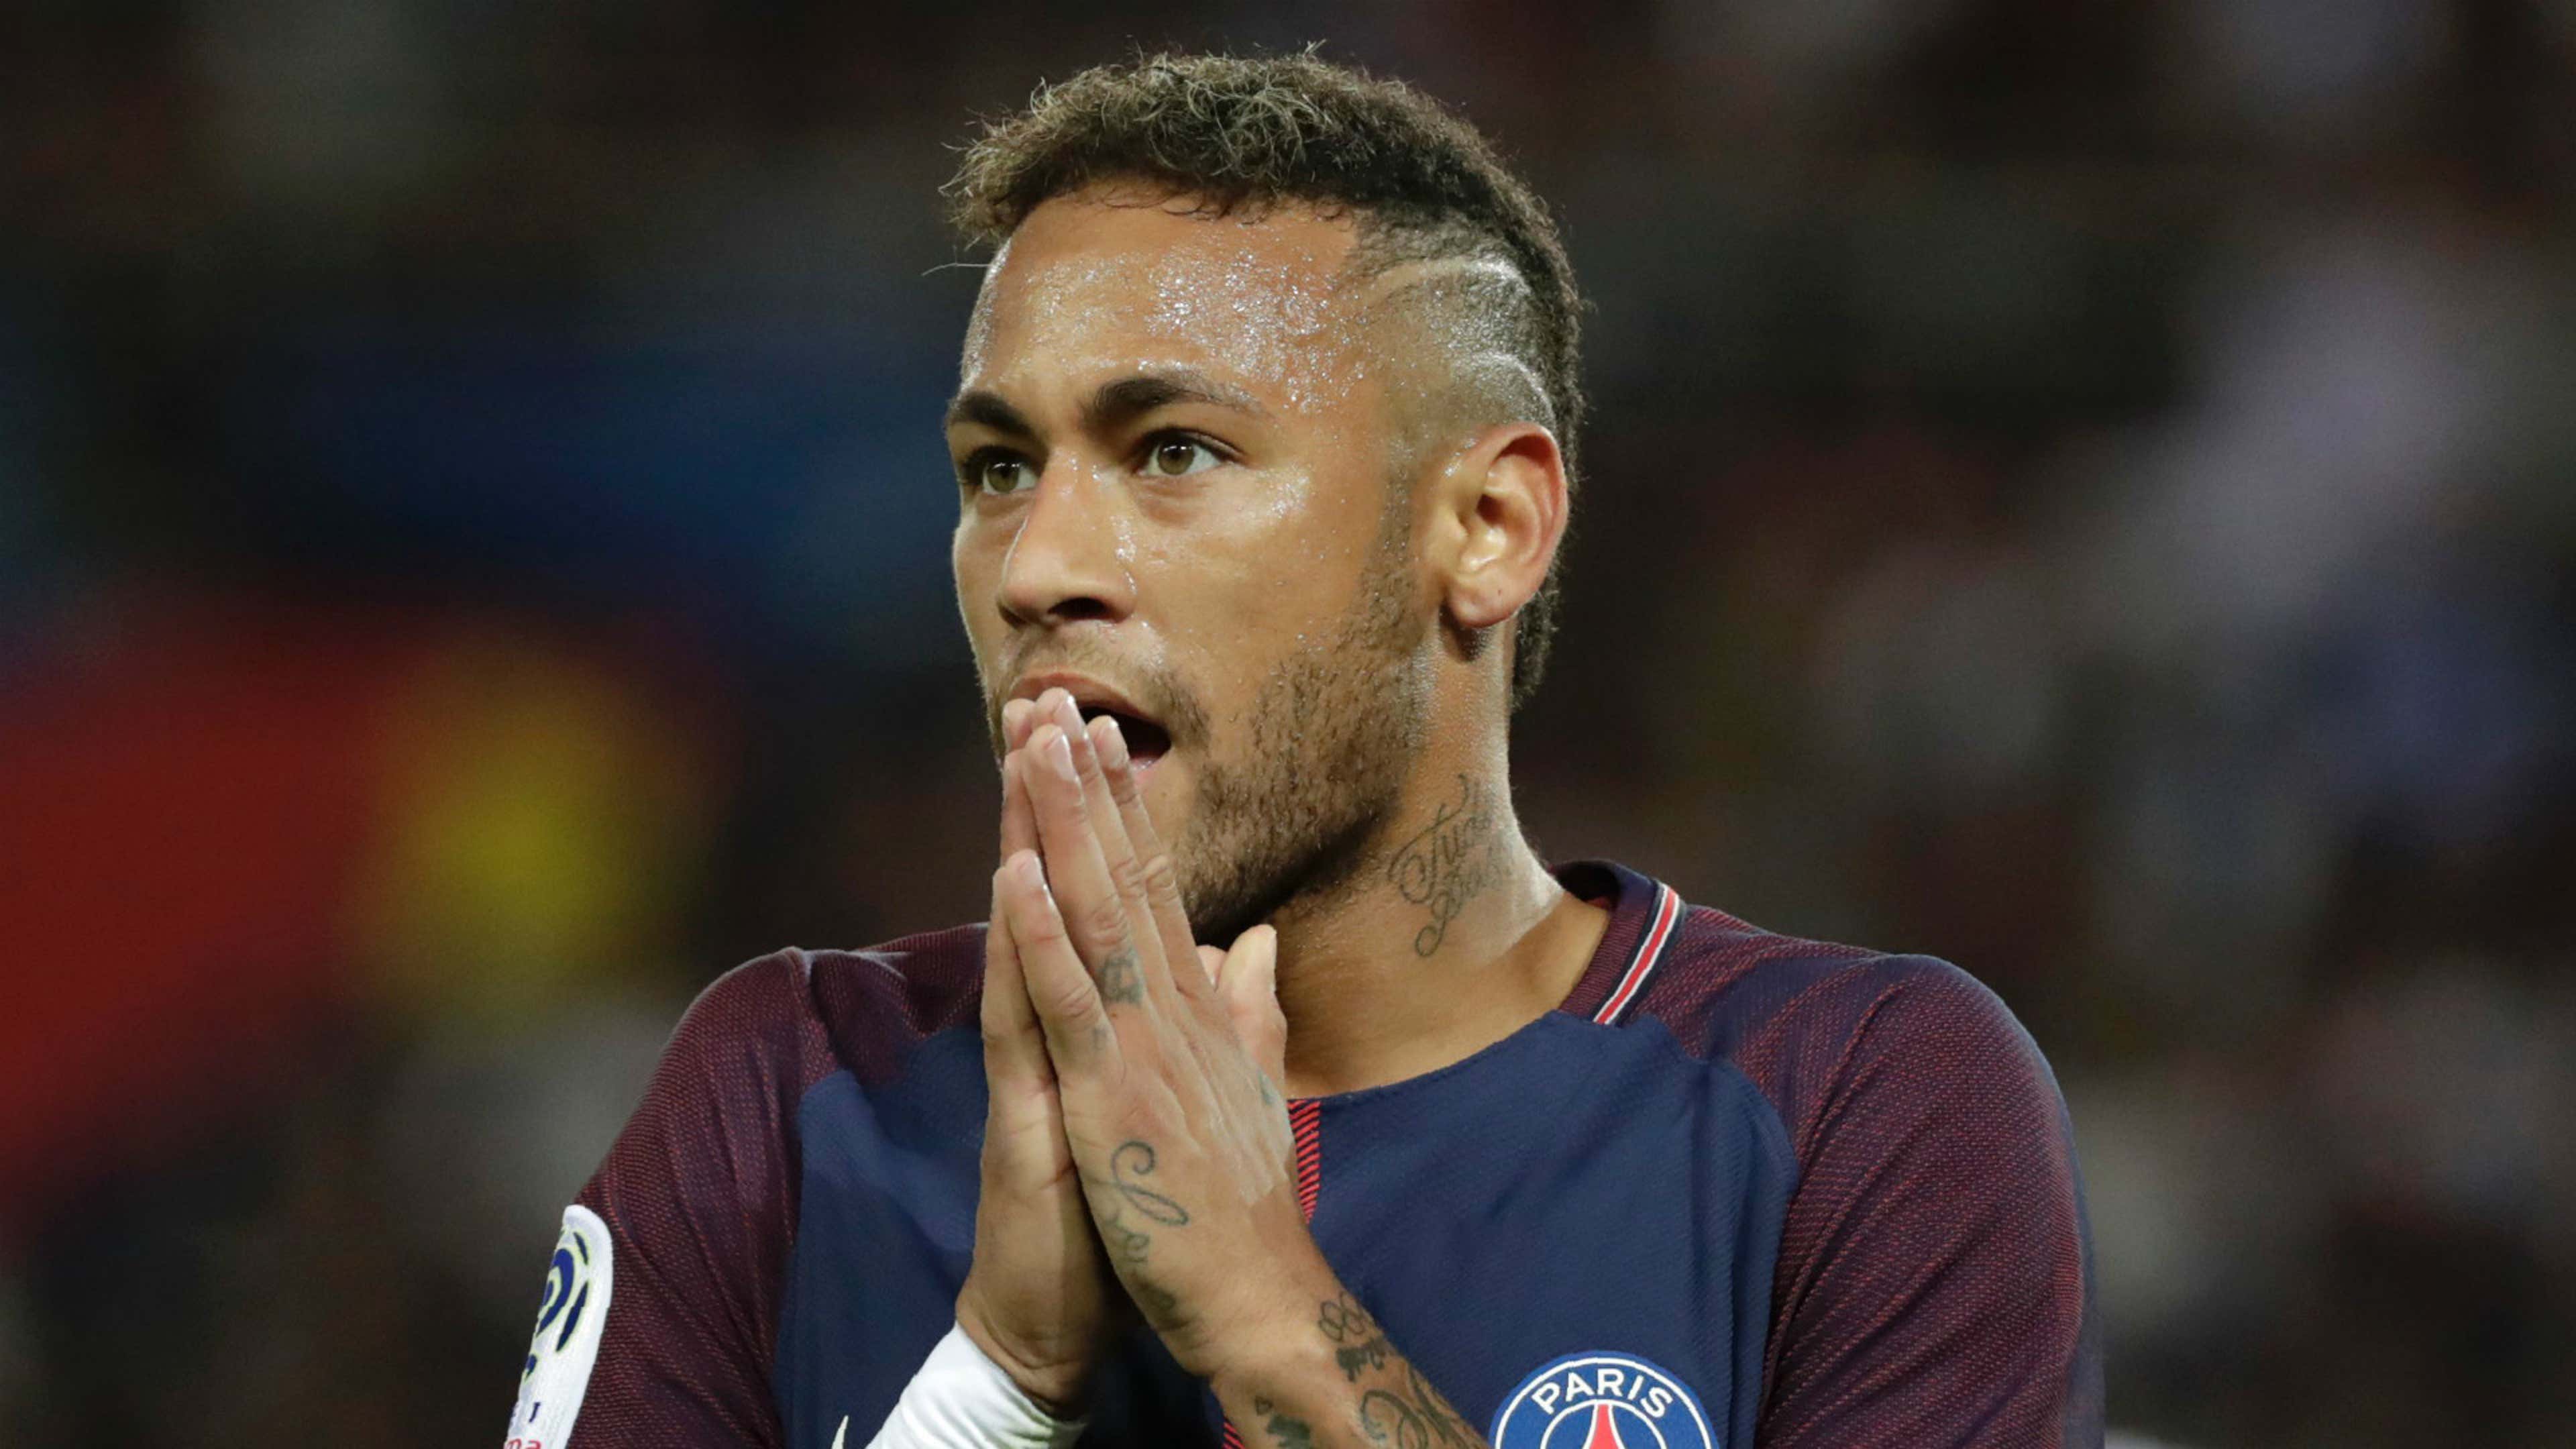 NÓNG: Barcelona khởi kiện Neymar vì vi phạm hợp đồng | Goal.com ...